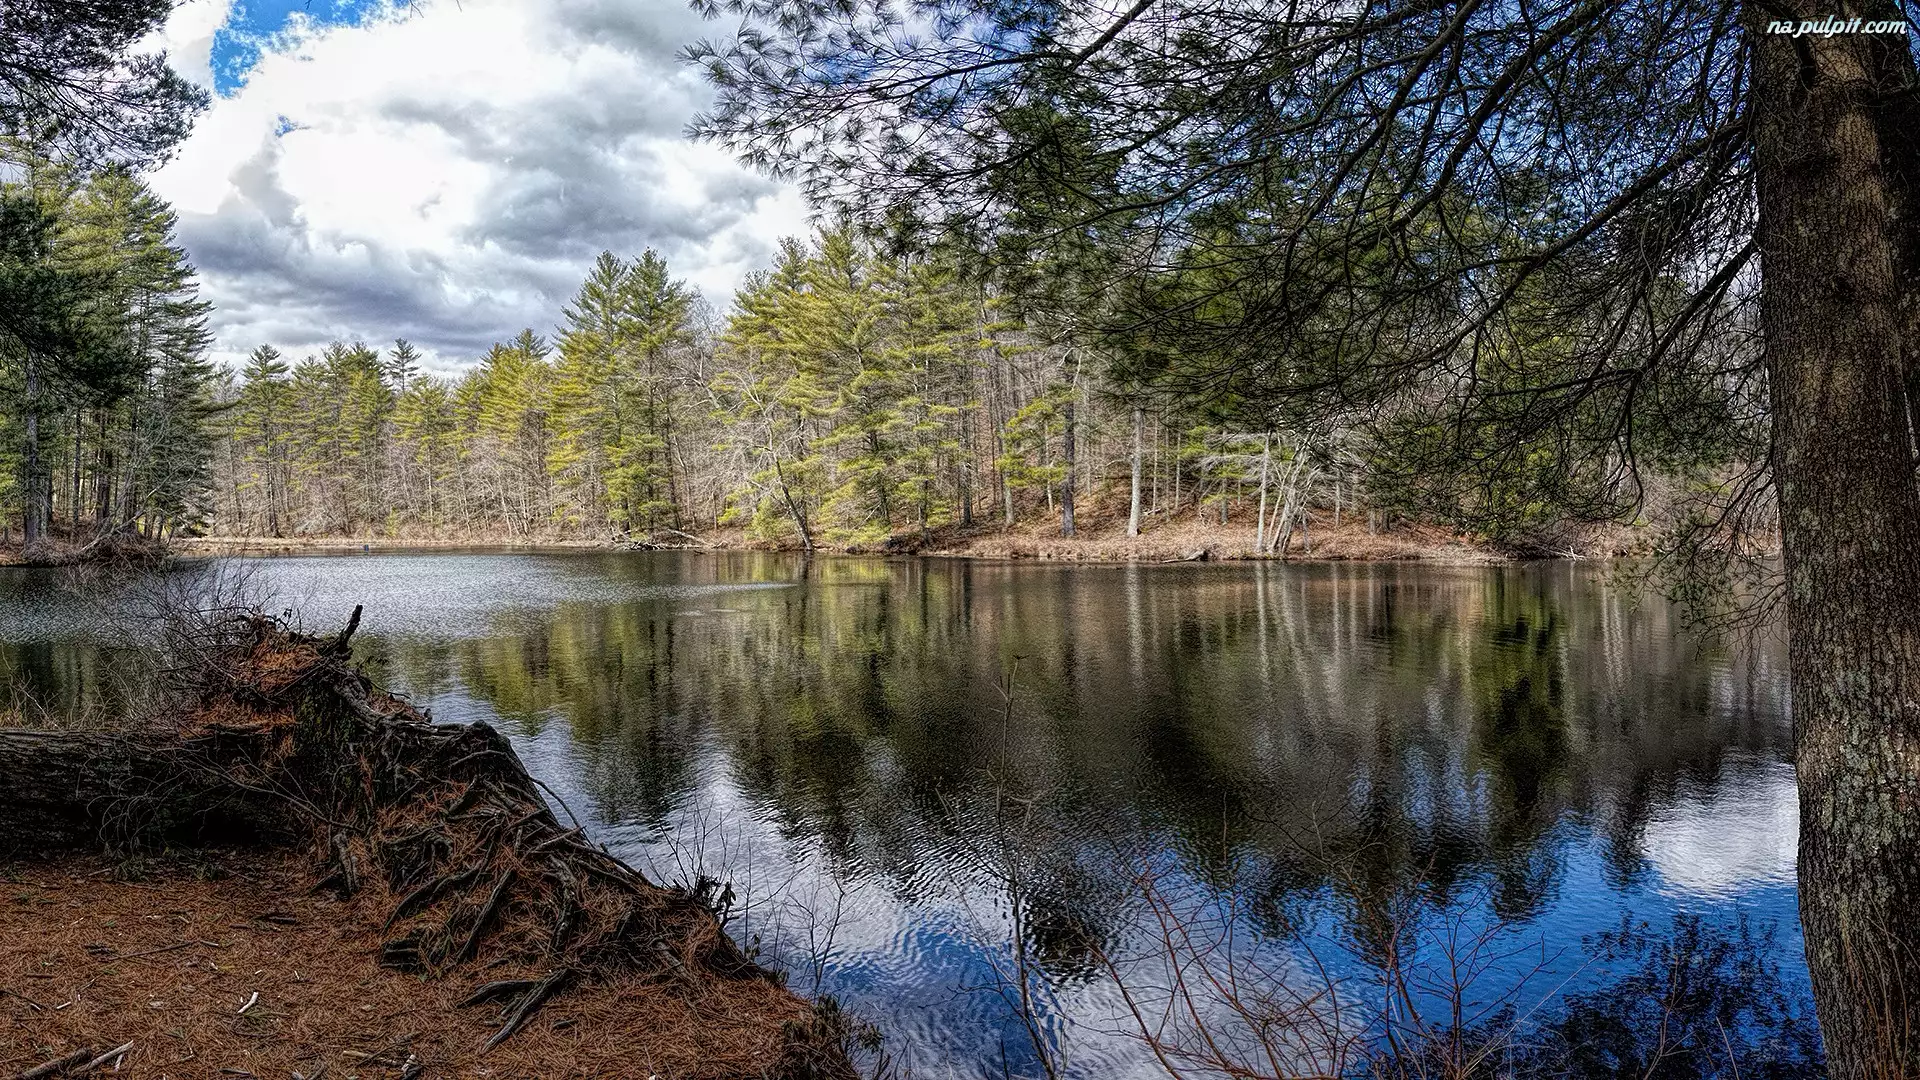 Peppers Mill Pond, Drzewa, Stany Zjednoczone, Jezioro, Massachusetts, Ware, Korzenie